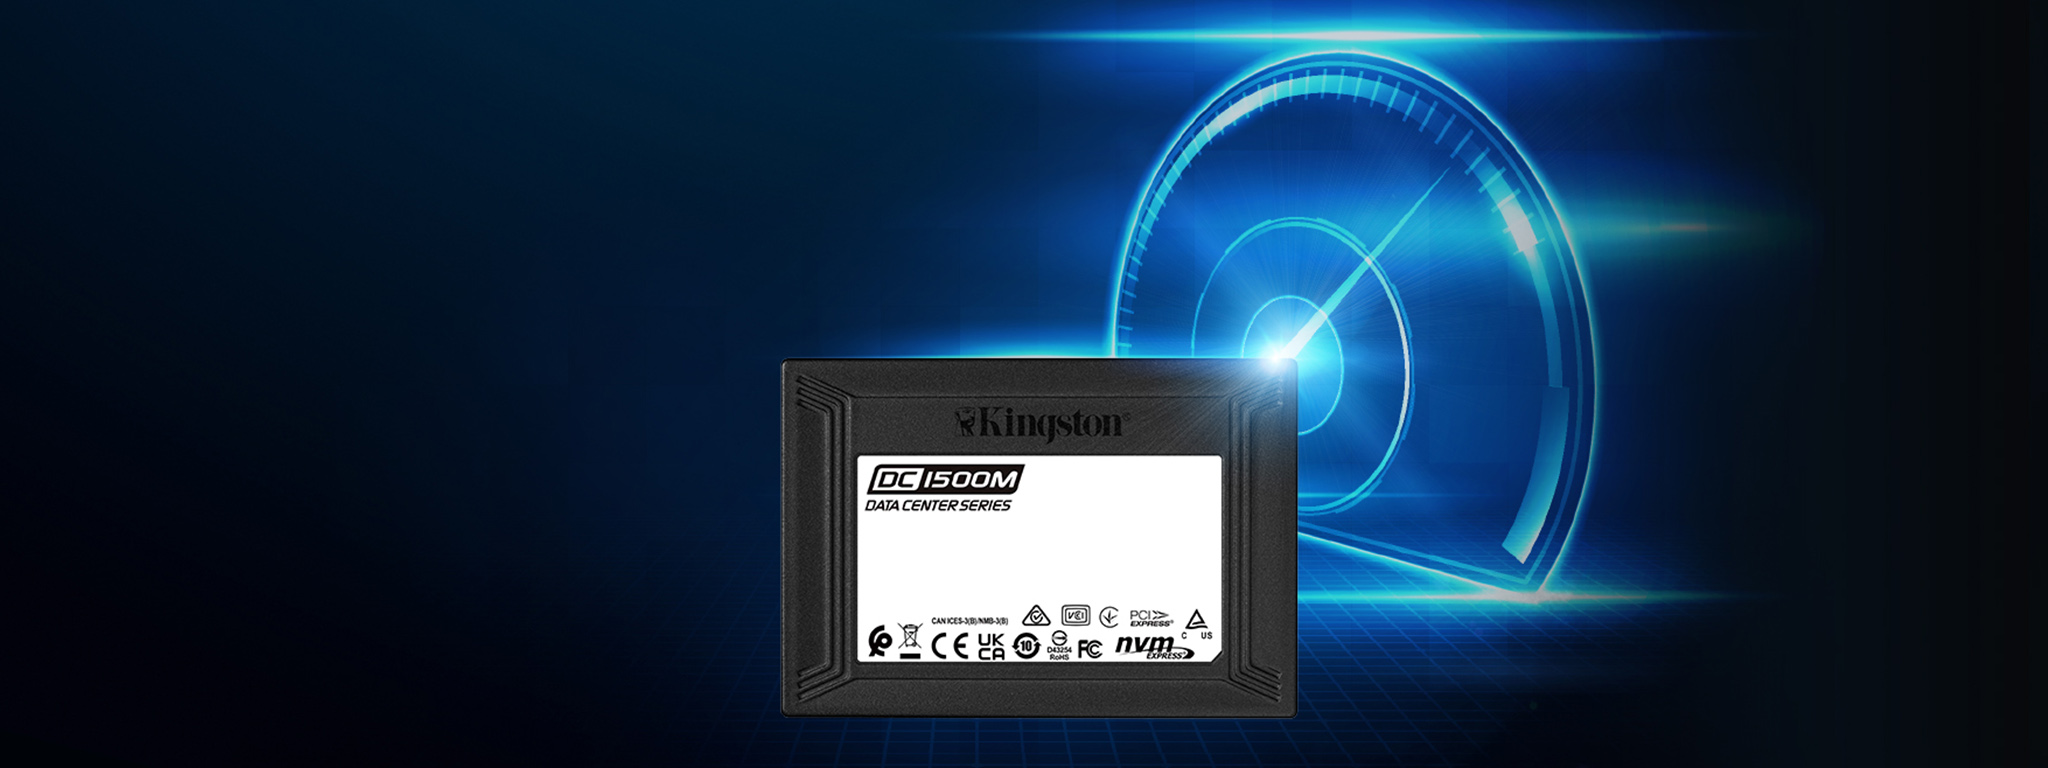 SSD Kingston DC1500M davanti a un’immagine raffigurante un contachilometri blu raffigurante la velocità massima